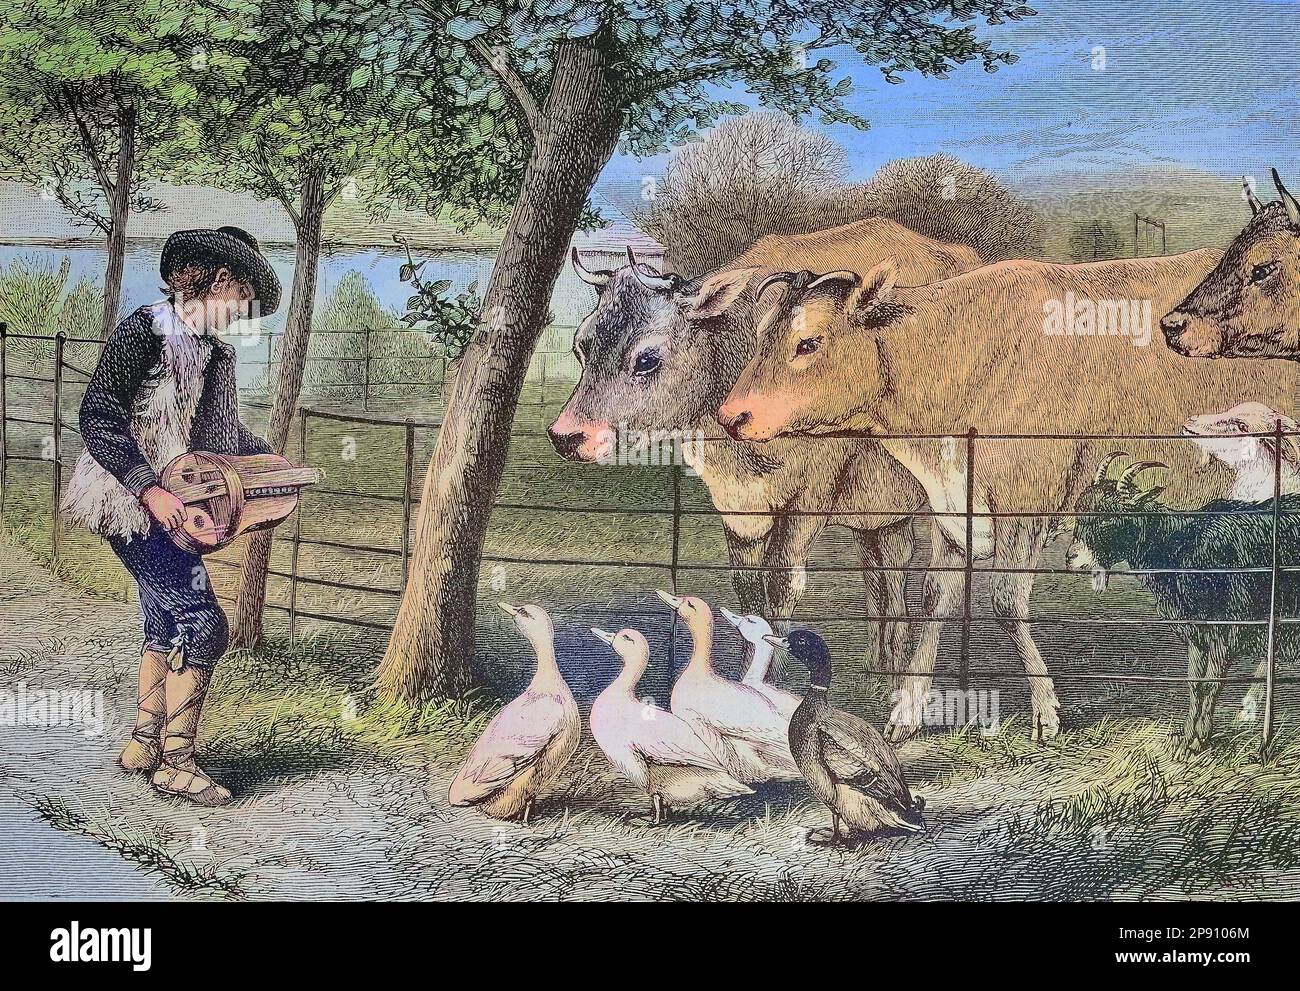 Junge mit einem Musikinstrument spielt vor Zuhörern, Kühen, Gänsen, Ziegen, Historisch, digital restaurierte Reproduktion von einer Vorlage aus dem 19. Jahrhundert Stock Photo